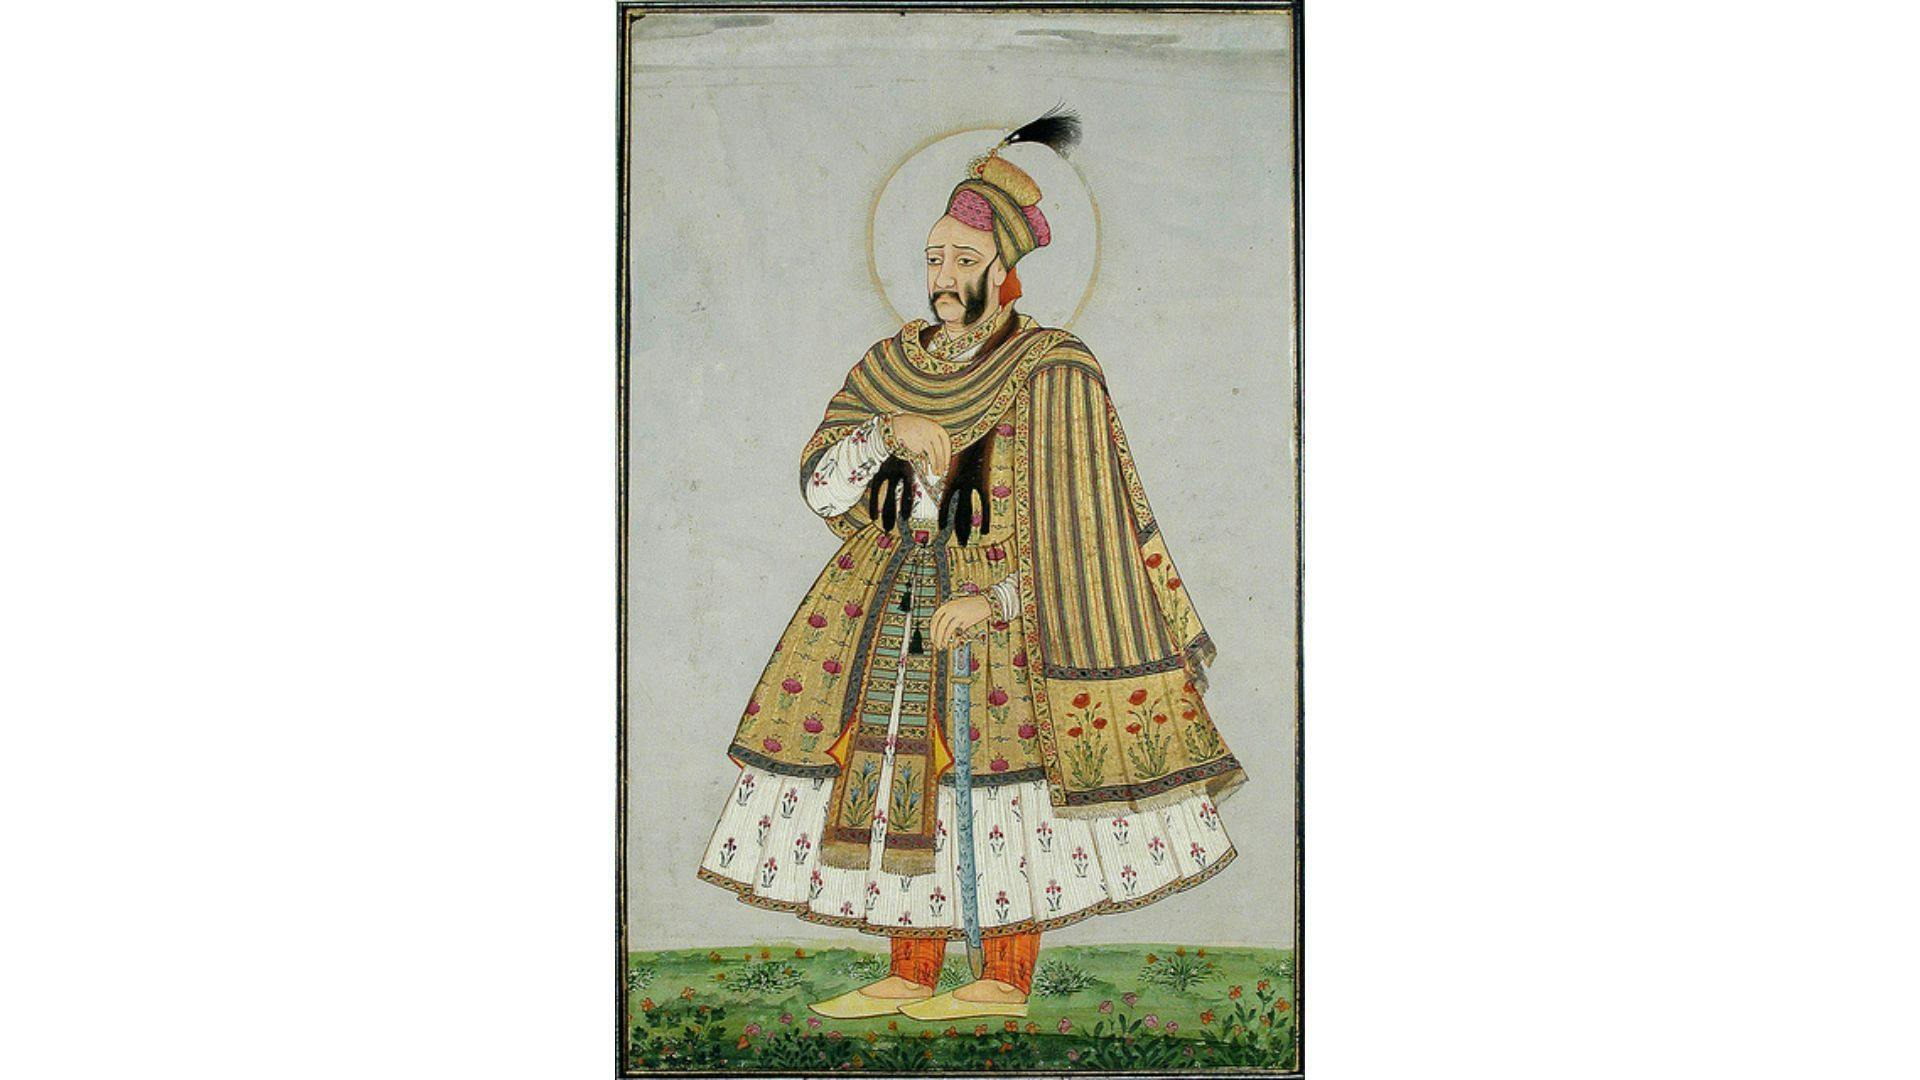 Sultan Abdullah Qutub Shah